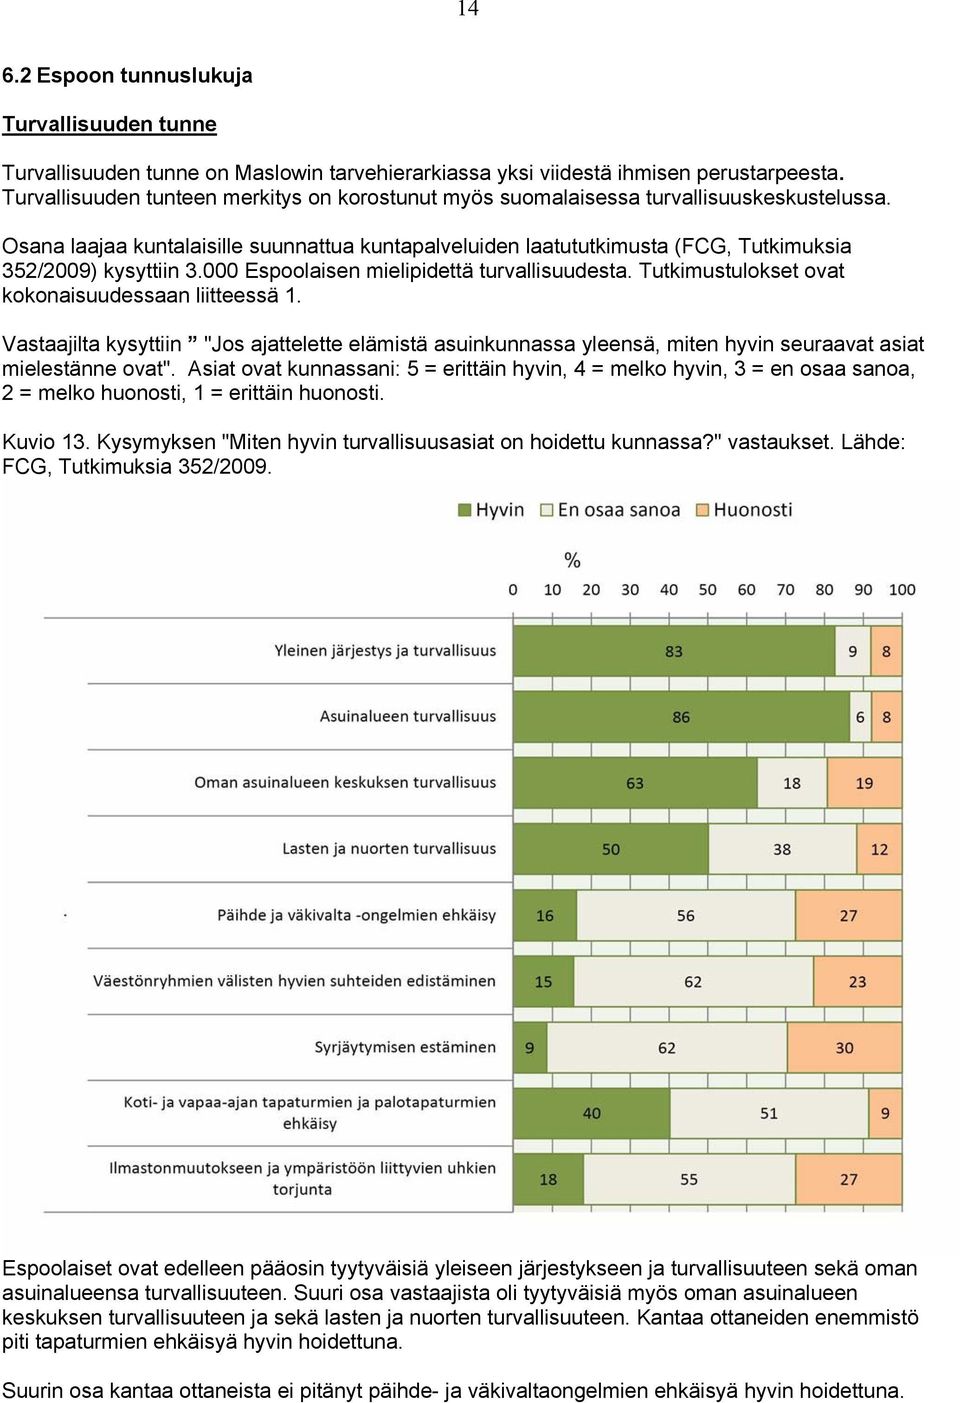 Osana laajaa kuntalaisille suunnattua kuntapalveluiden laatututkimusta (FCG, Tutkimuksia 352/2009) kysyttiin 3.000 Espoolaisen mielipidettä turvallisuudesta.